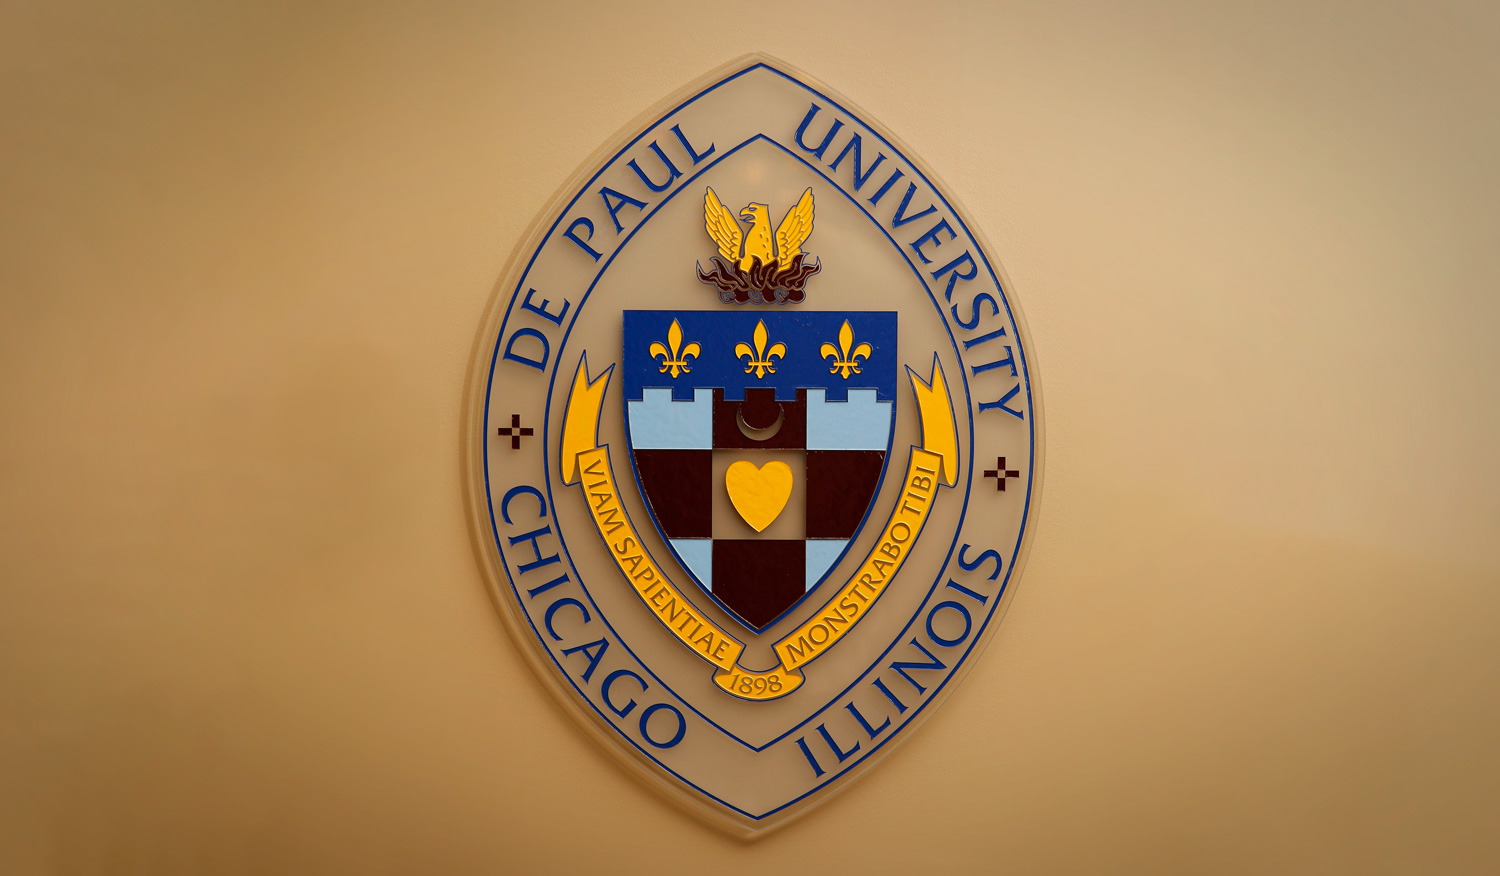 DePaul University artwork of its coat of arms